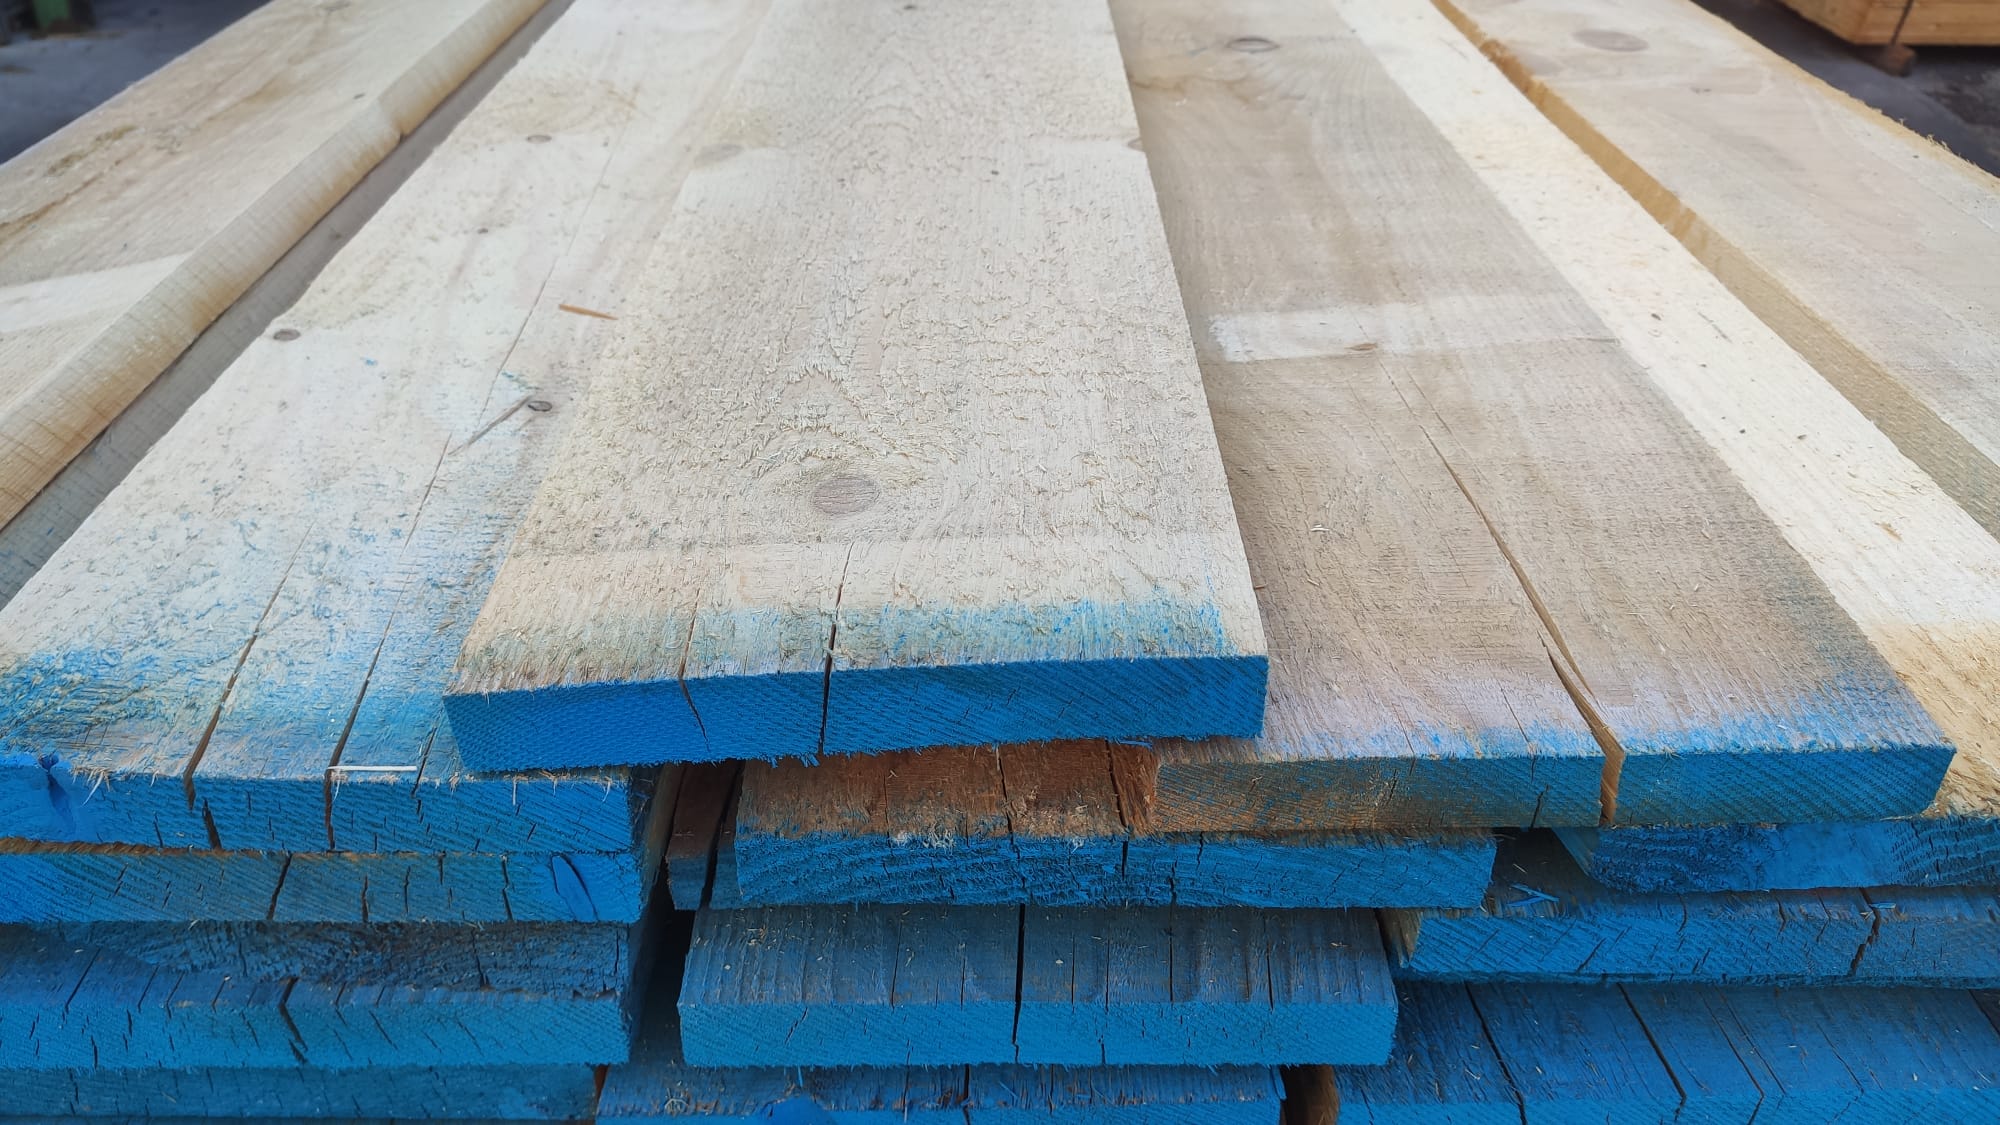 Tavole legno massello grezzo abete per carpenteria - A Proposito